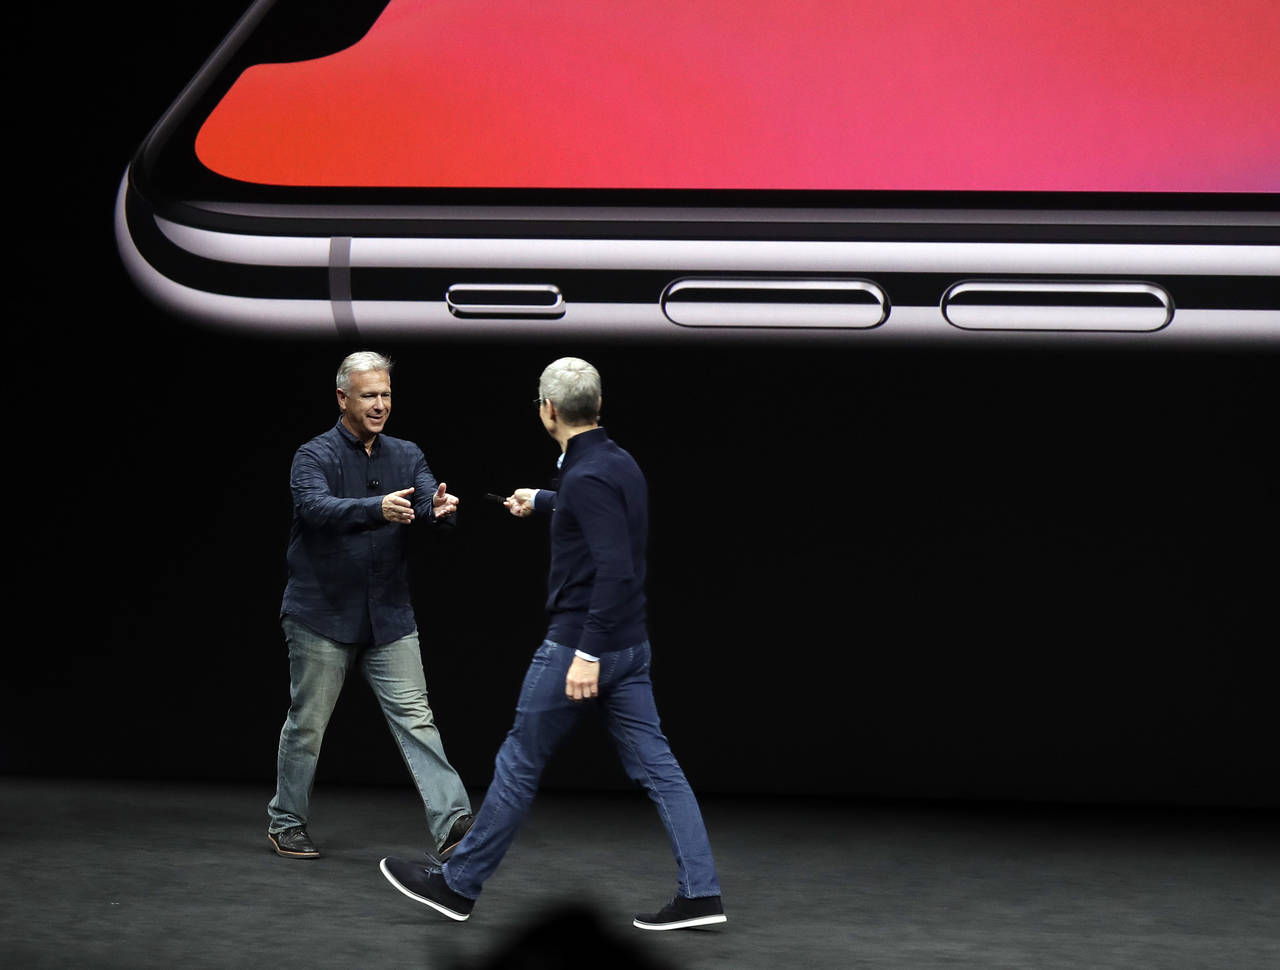 Proyectos. Phil Schiller y Tim Cook, vicepresidente y presidente de Apple juegan en la presentación del iPhone X, que tiene entre otras cosas, reconocimiento de rostro, innovación tecnológica que dará paso a nuevos proyectos. (EFE)